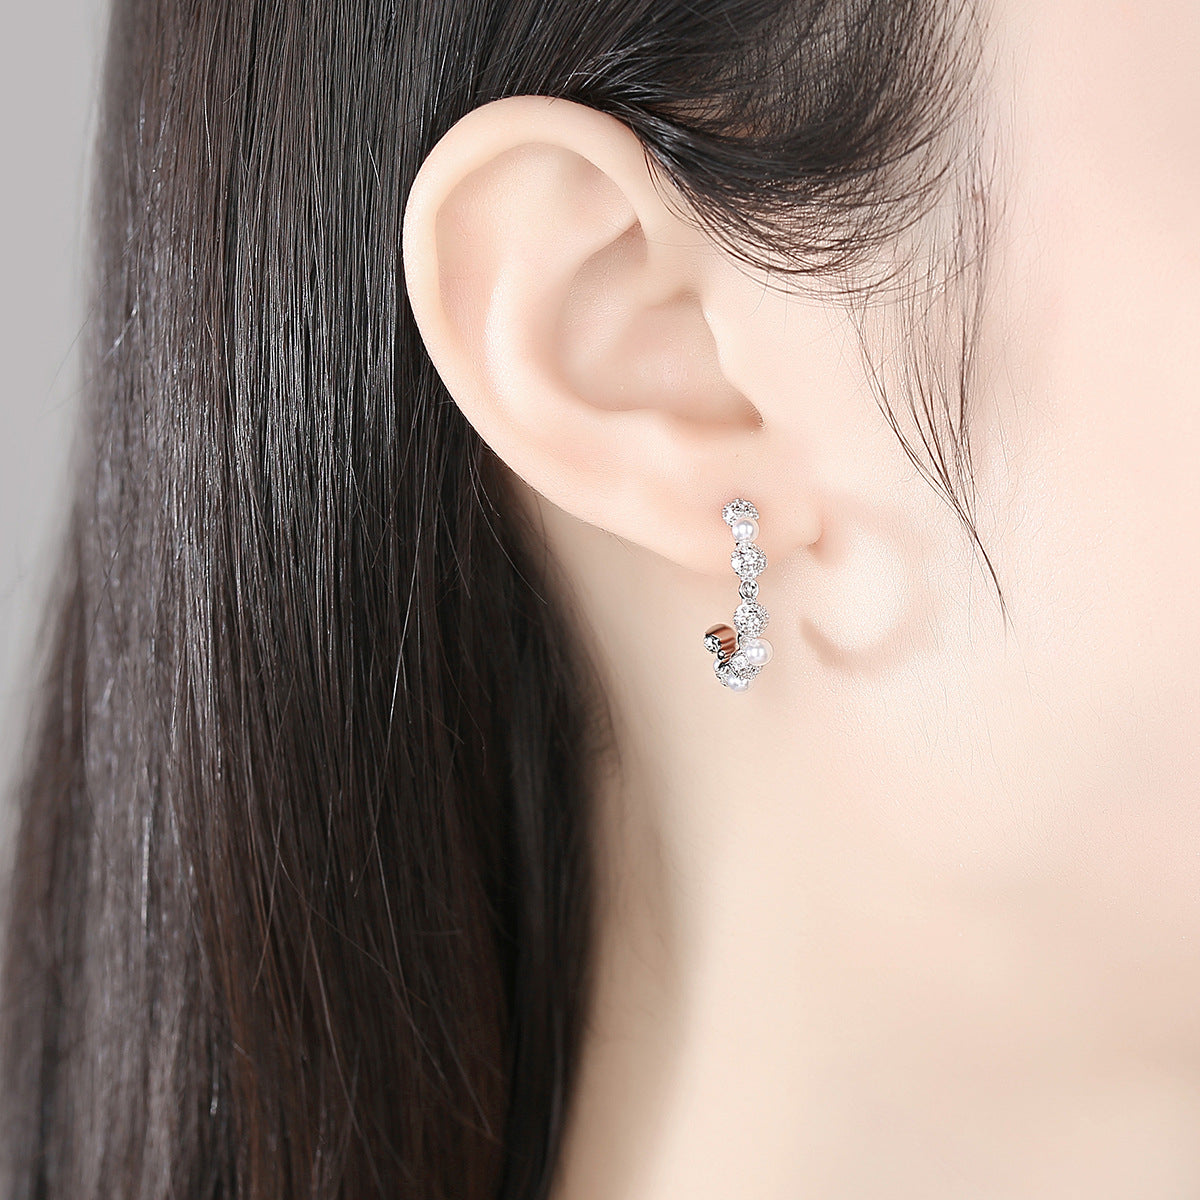 Pearl & Cubic Zirconia Silver-Plated Hoop Earrings